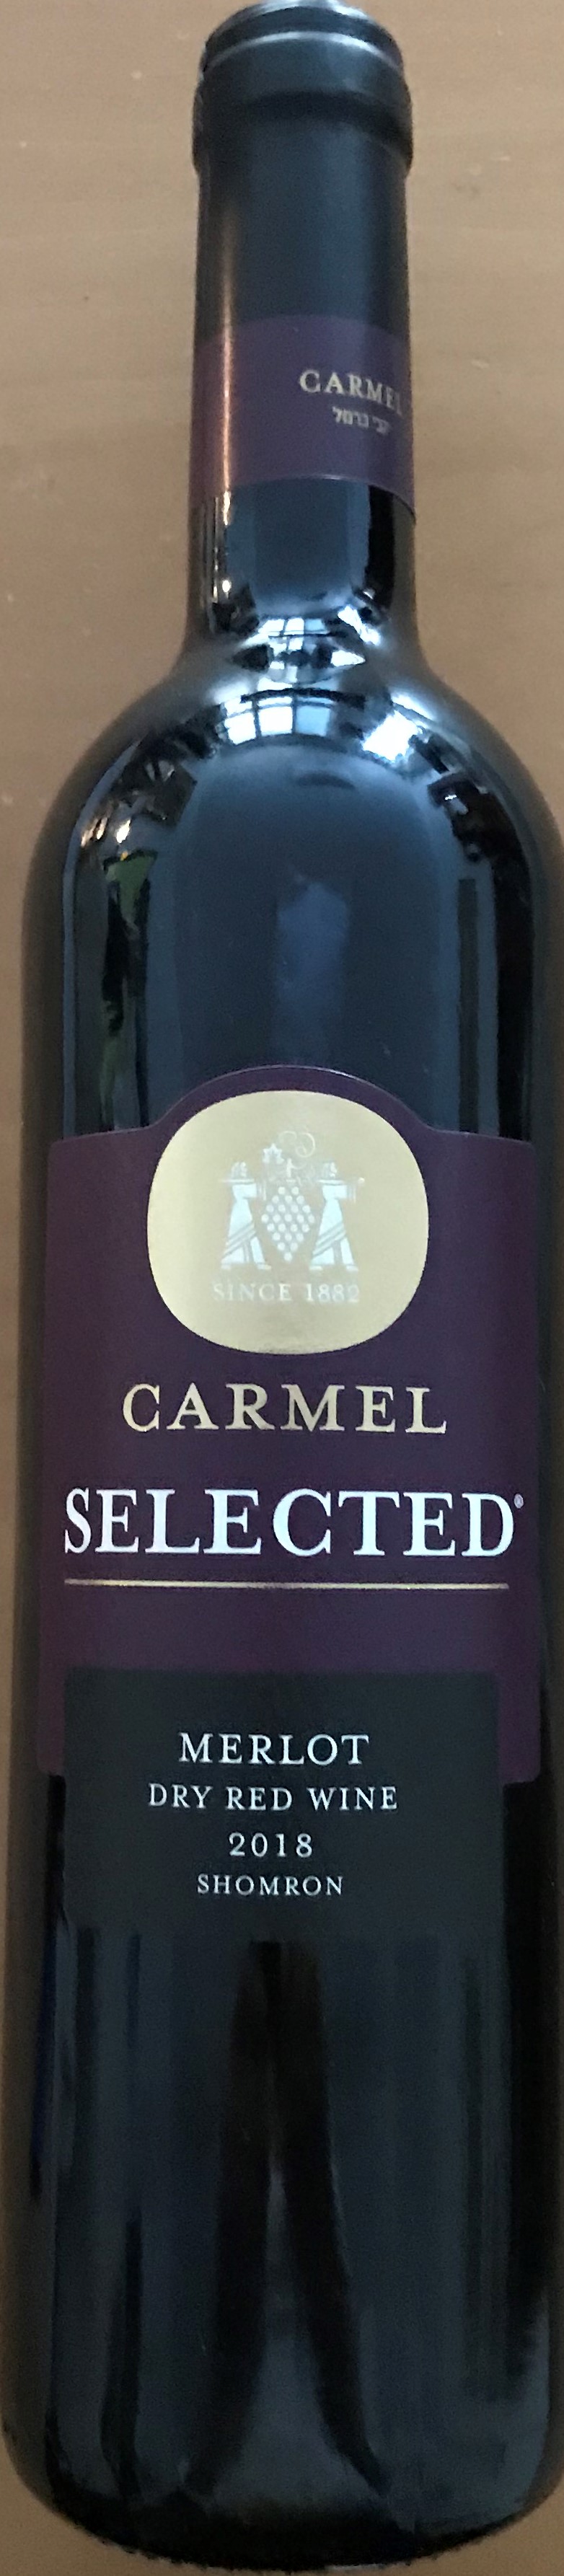 Carmel Selected Merlot